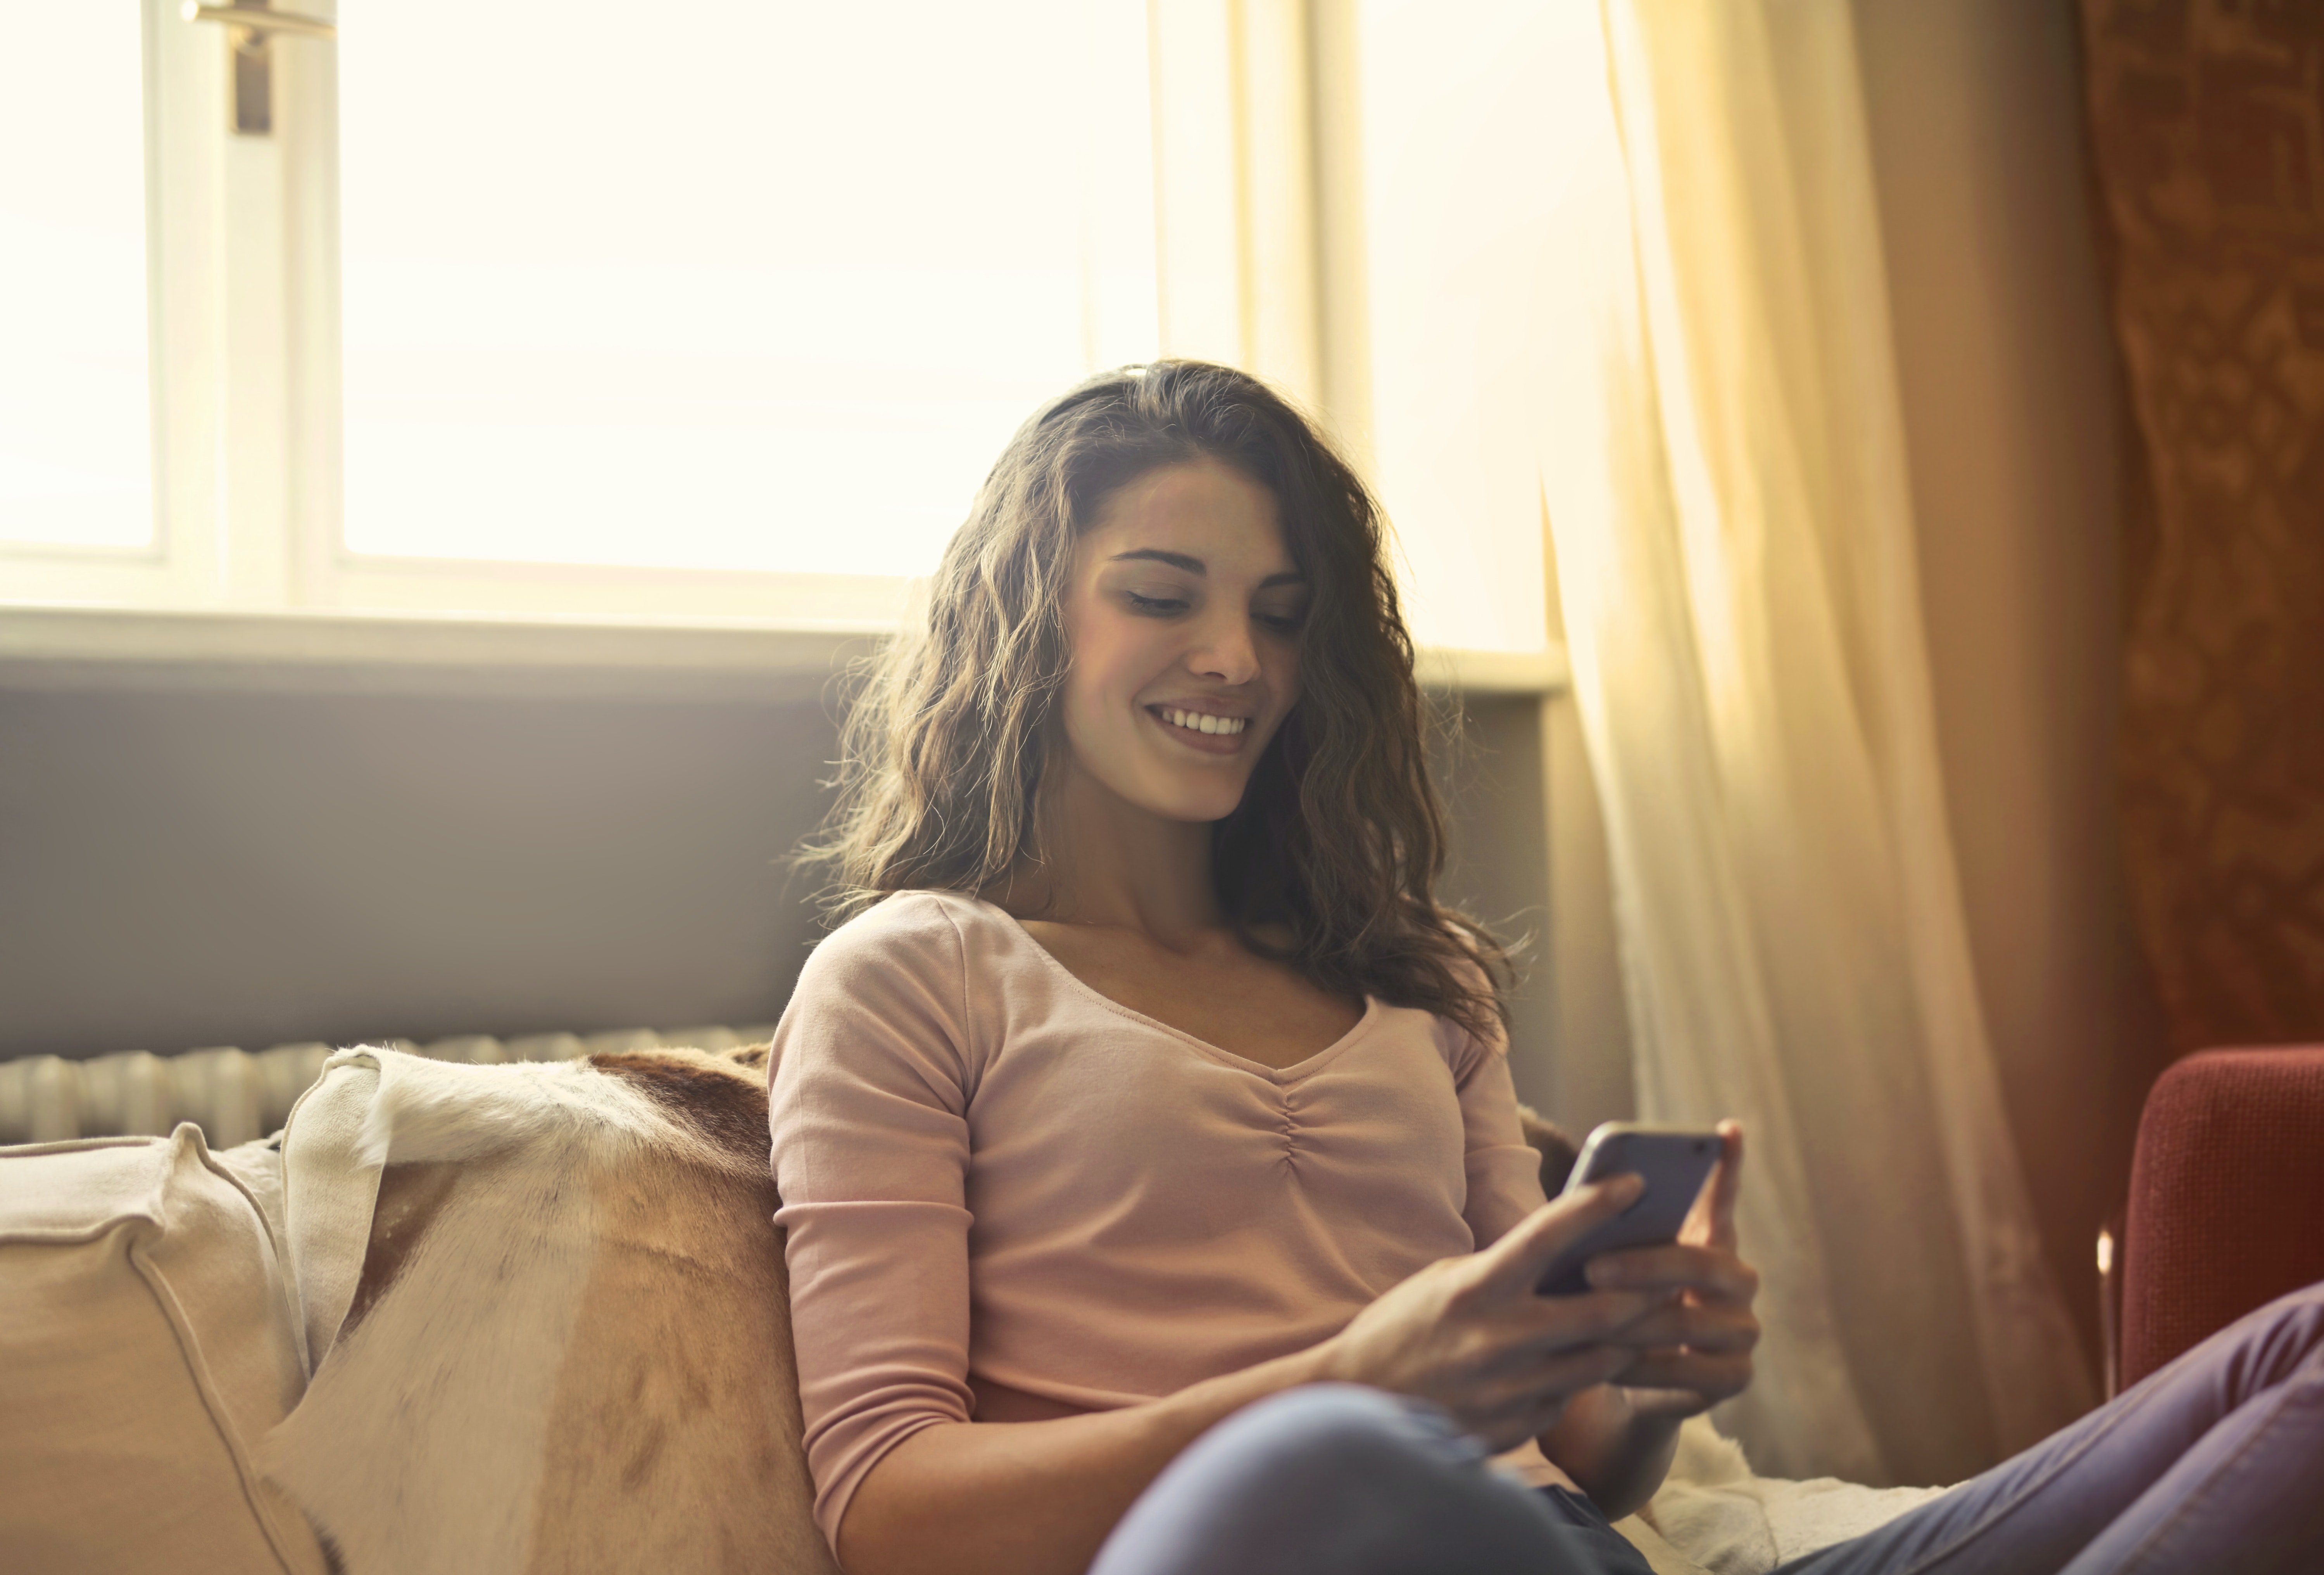 Una mujer sonrie feliz al ver la pantalla de su celular. | Foto: Pexels